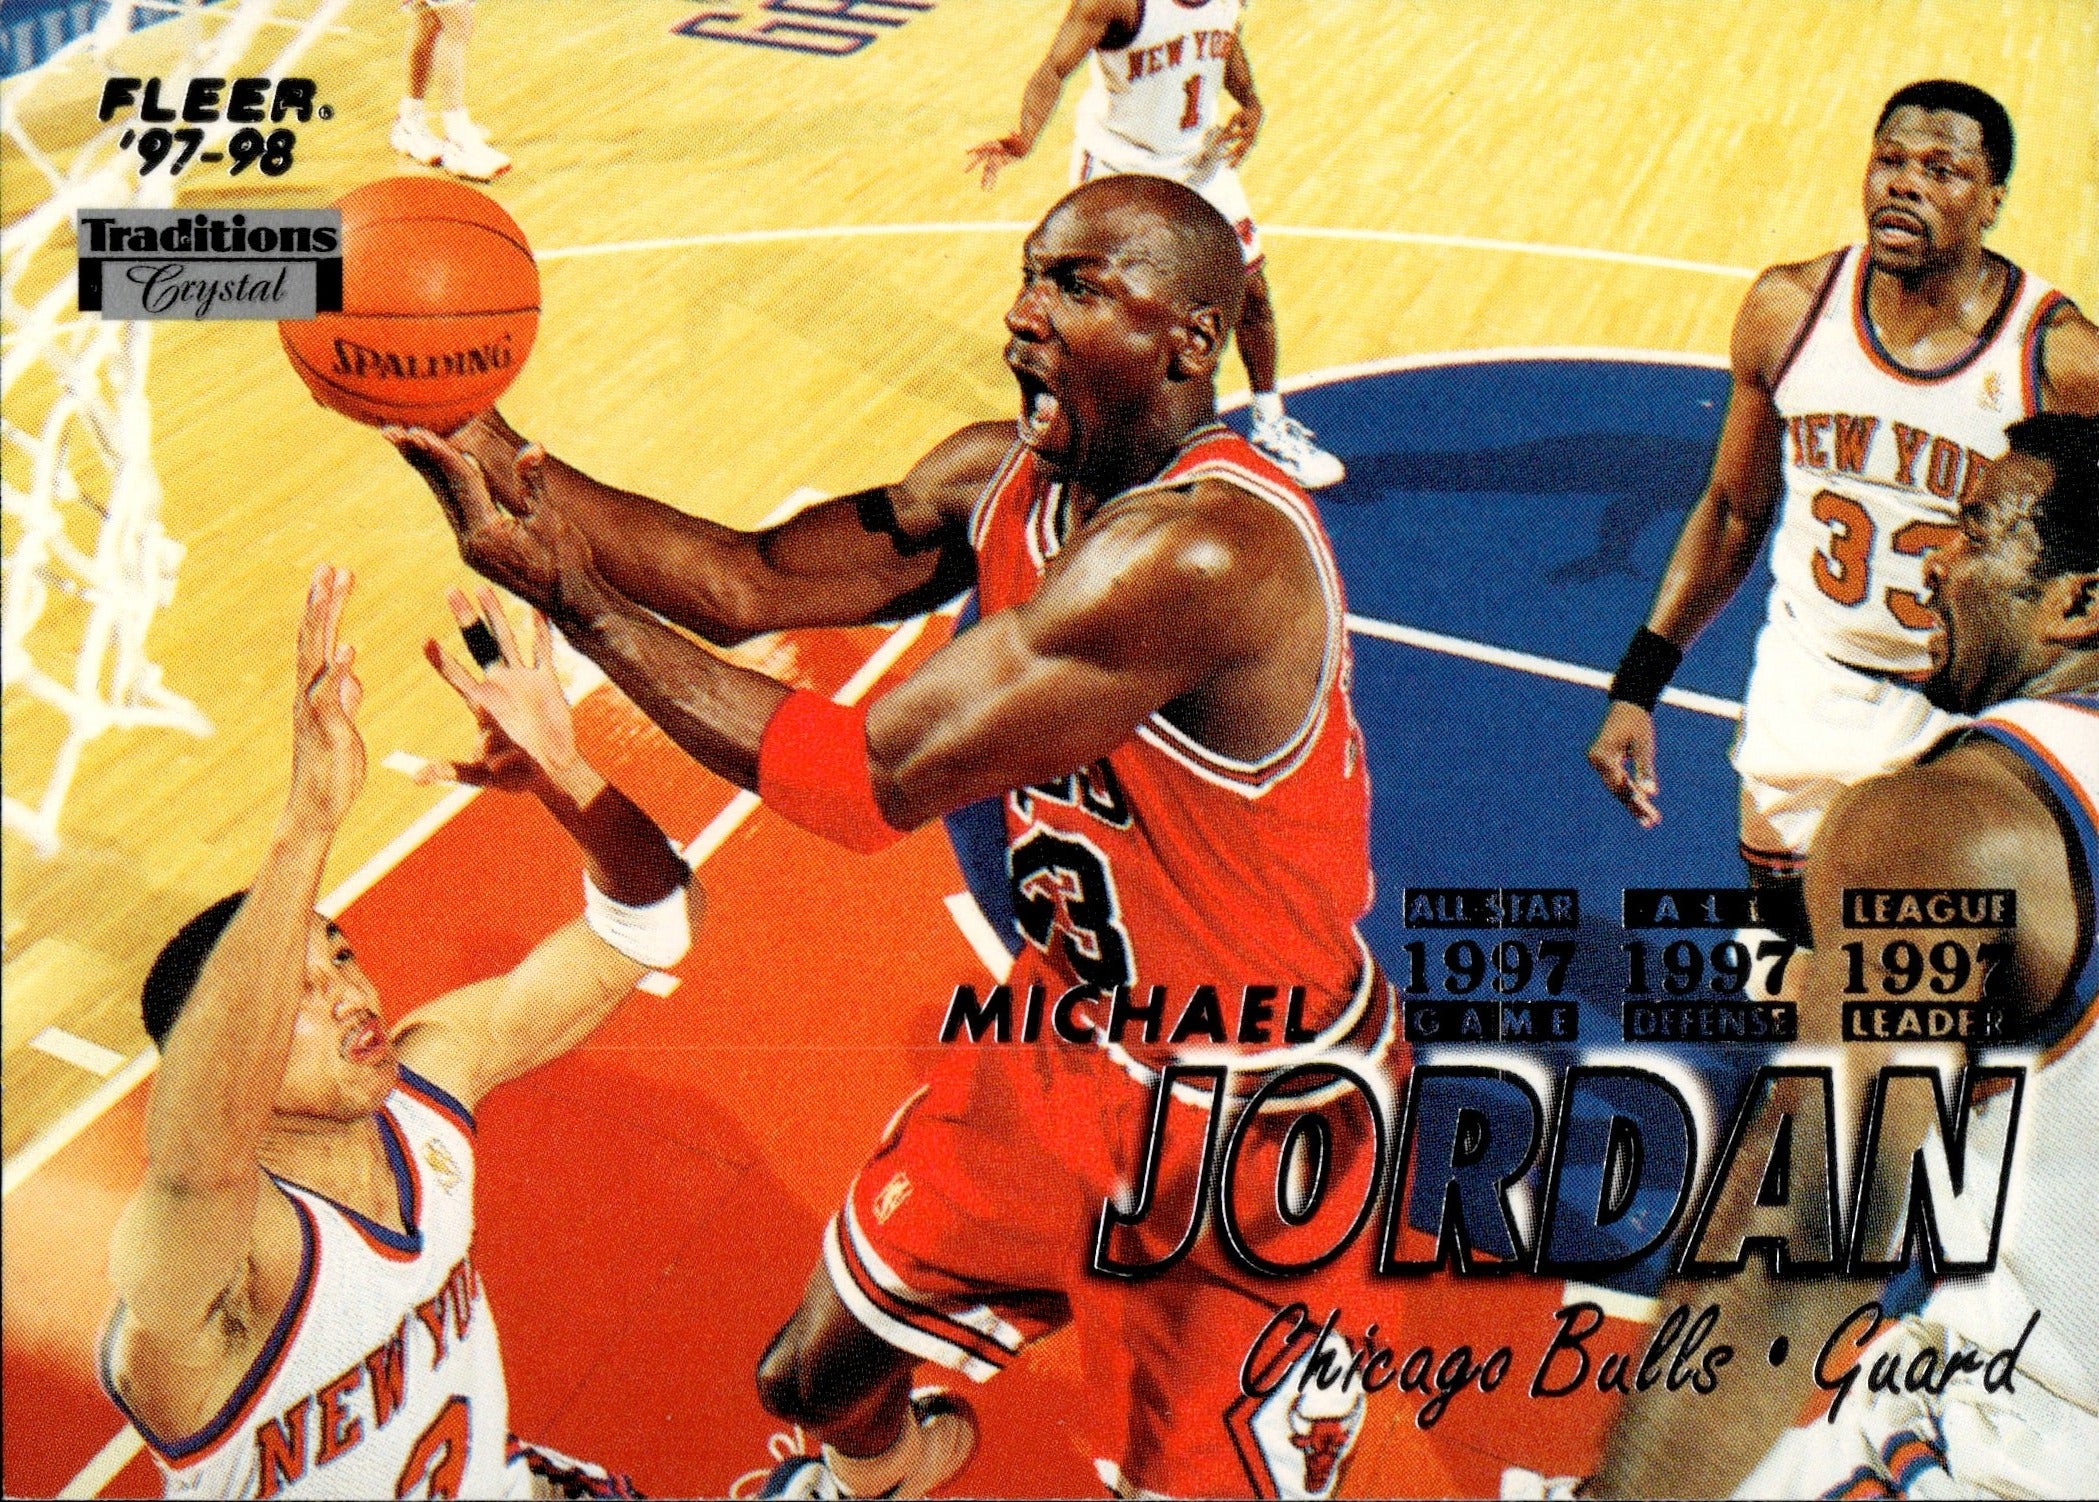 Michael Jordan 1997-98 Upper Deck #18 (PSA 8)